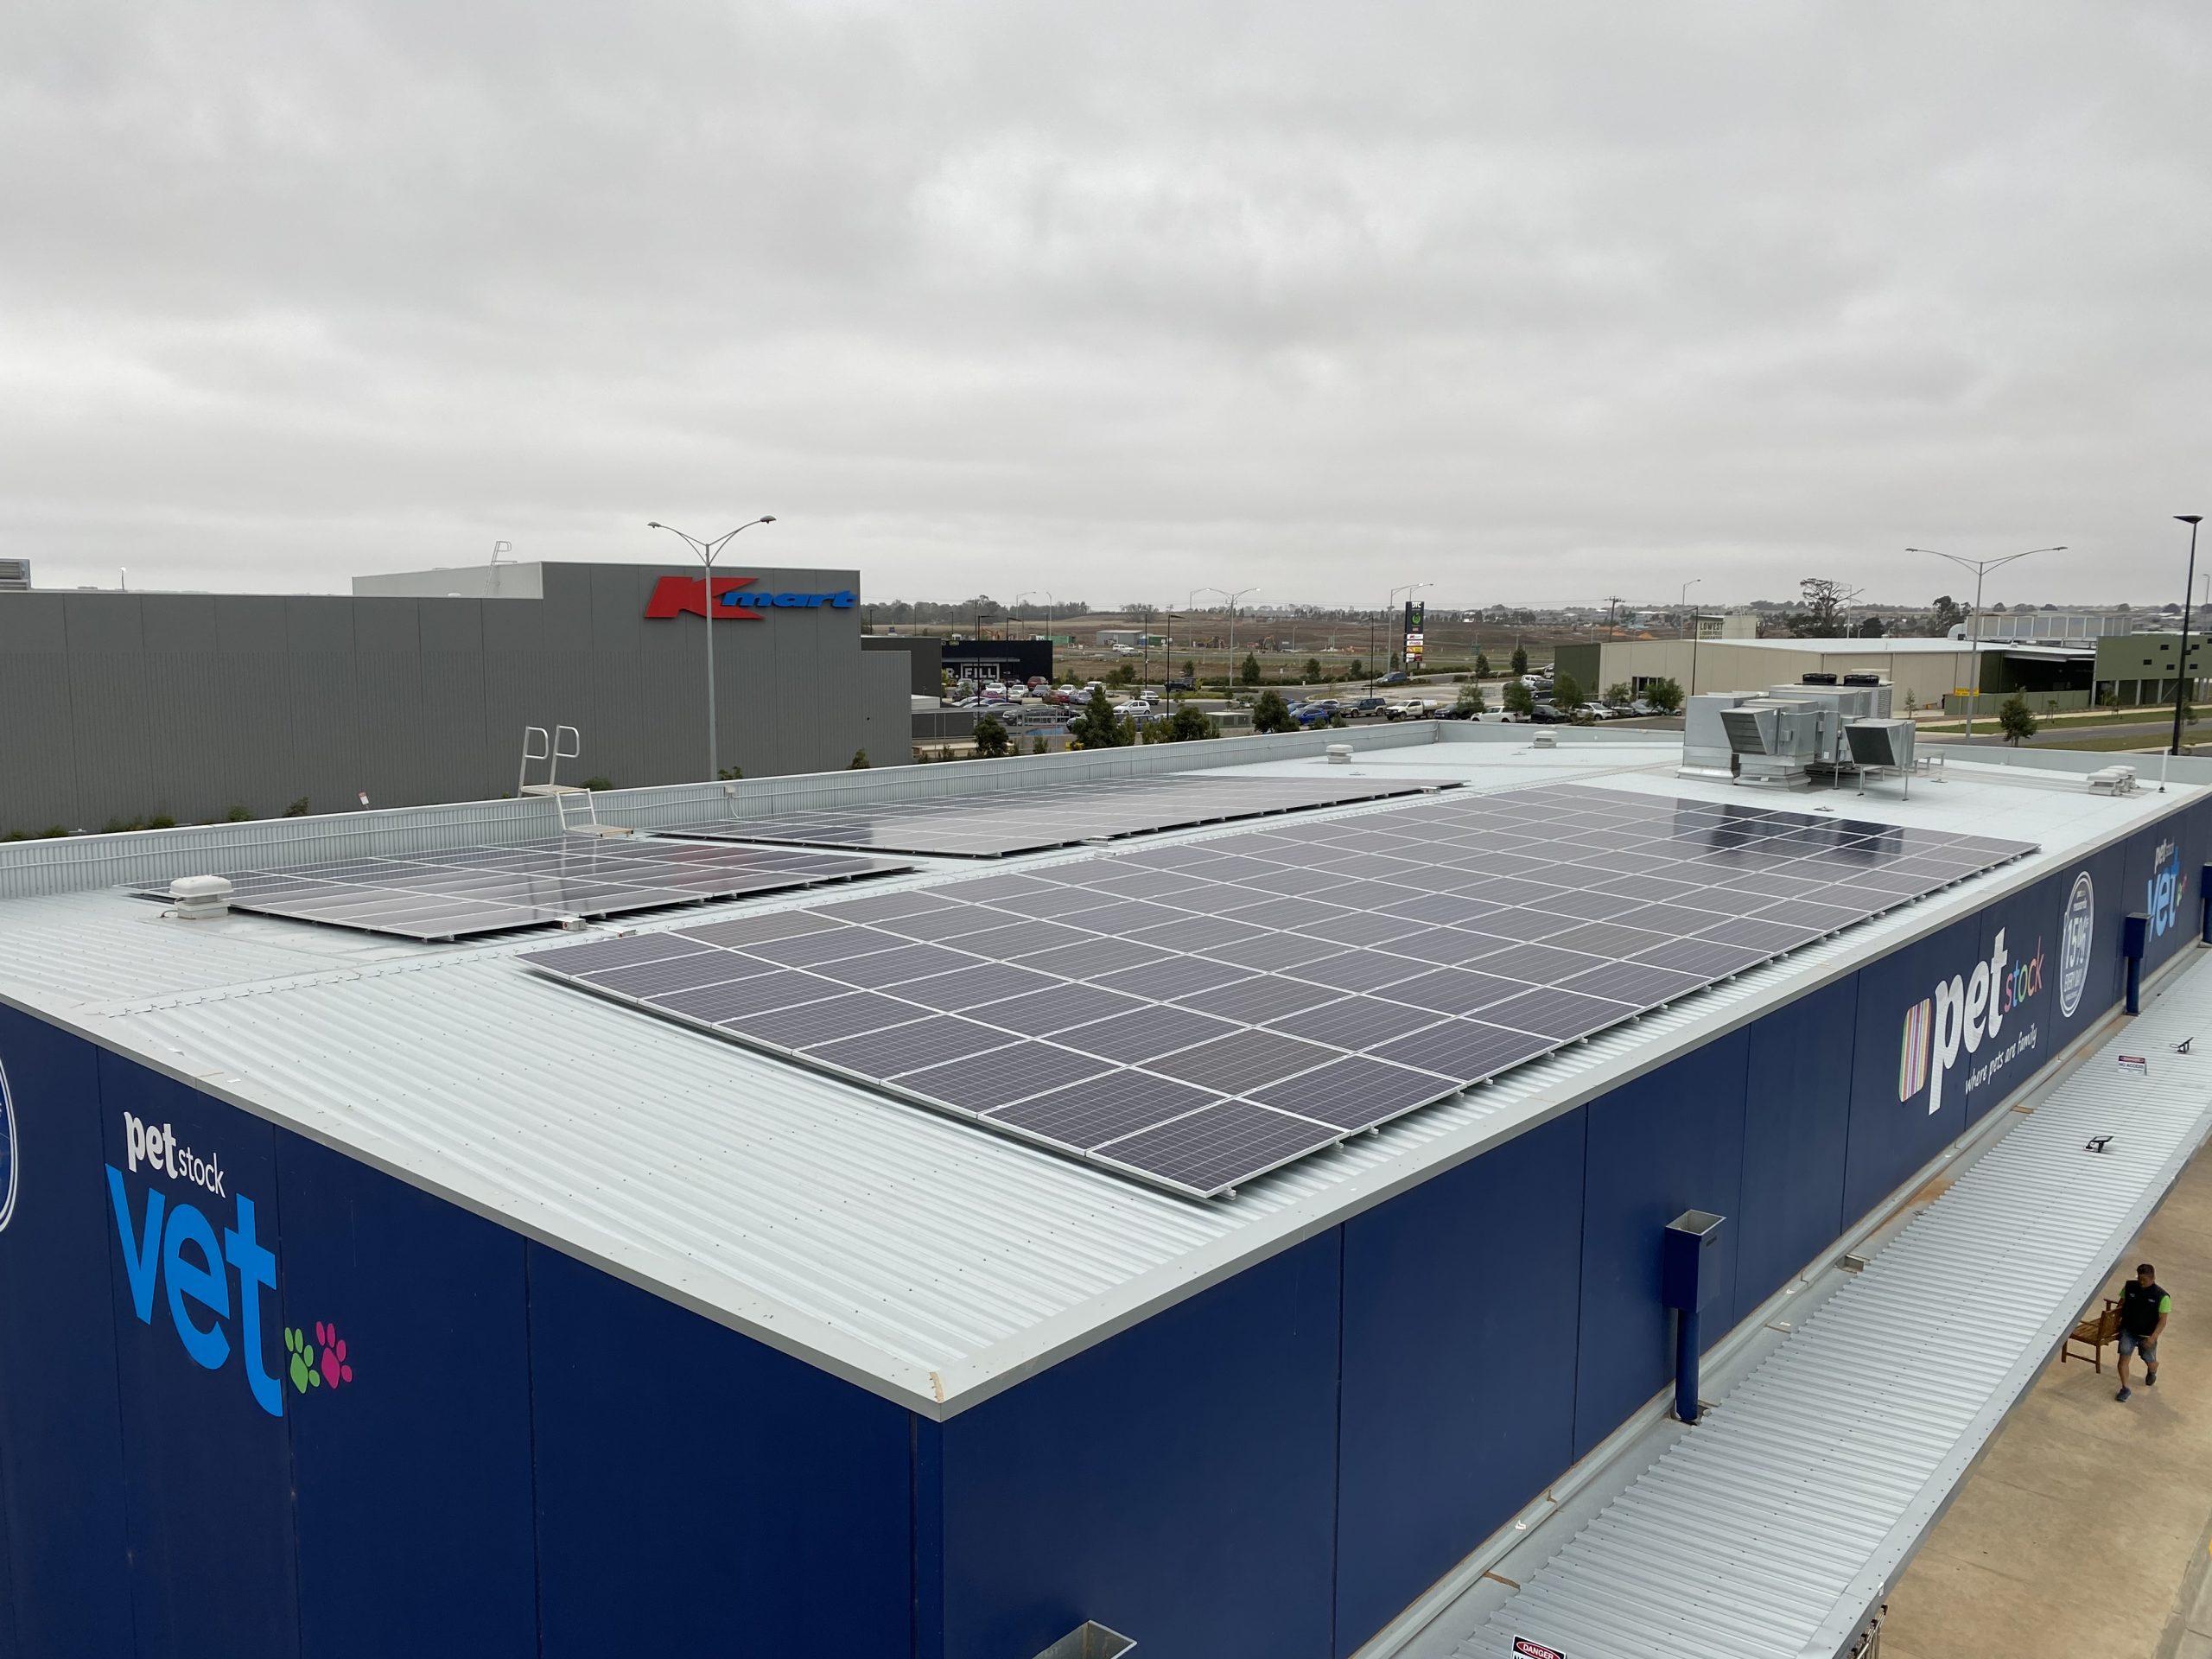 Solar panels installed on tin roof of Petstock Vet